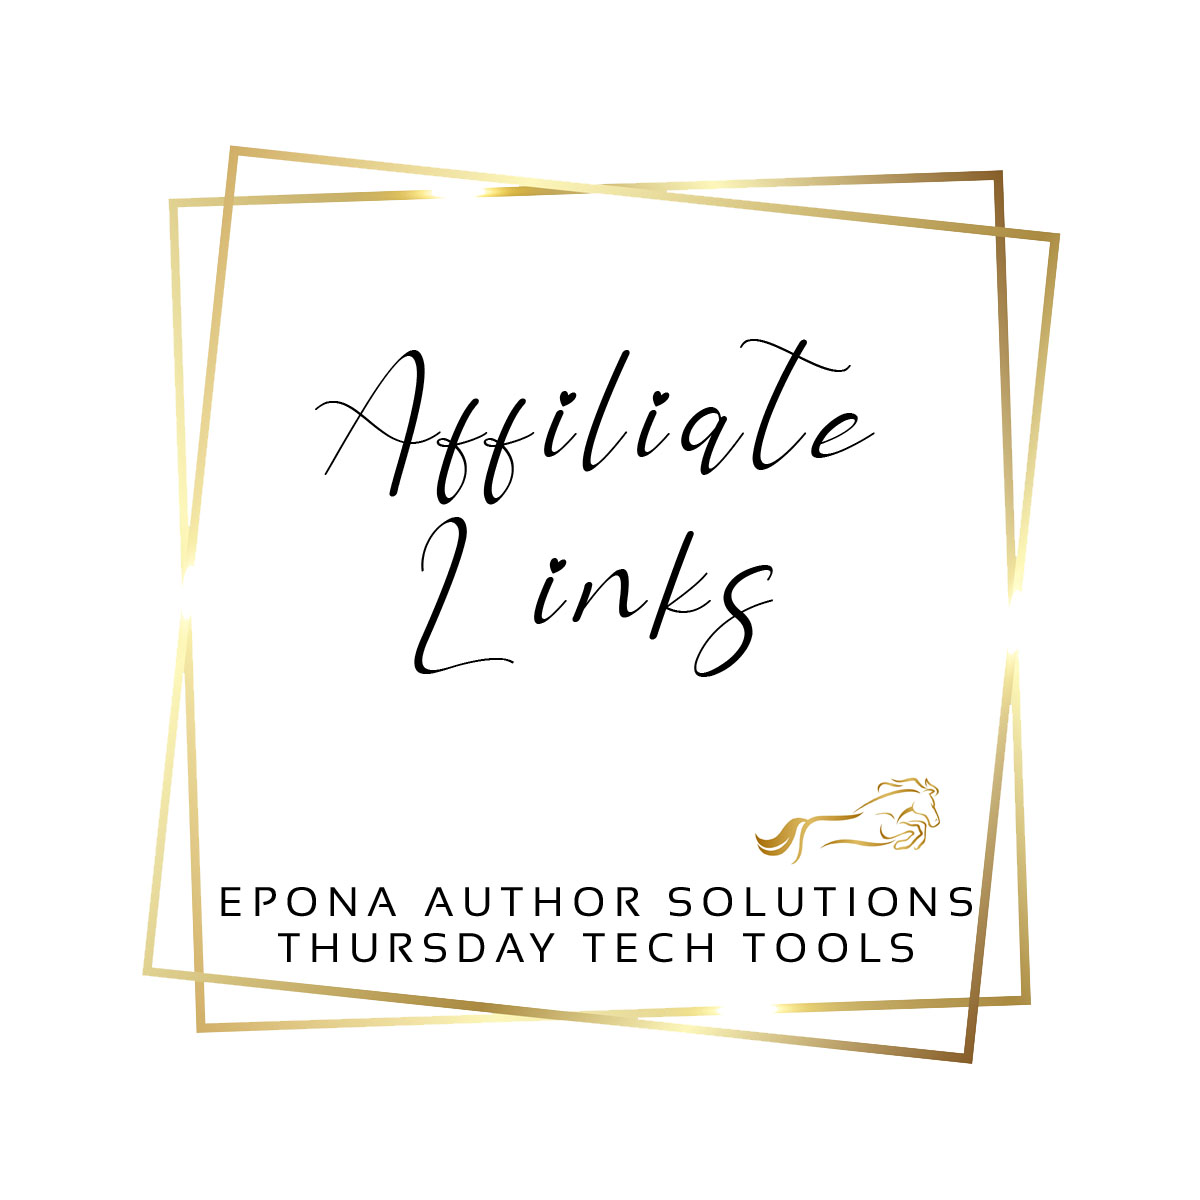 Do you use affiliate links? (Tech Thursday)